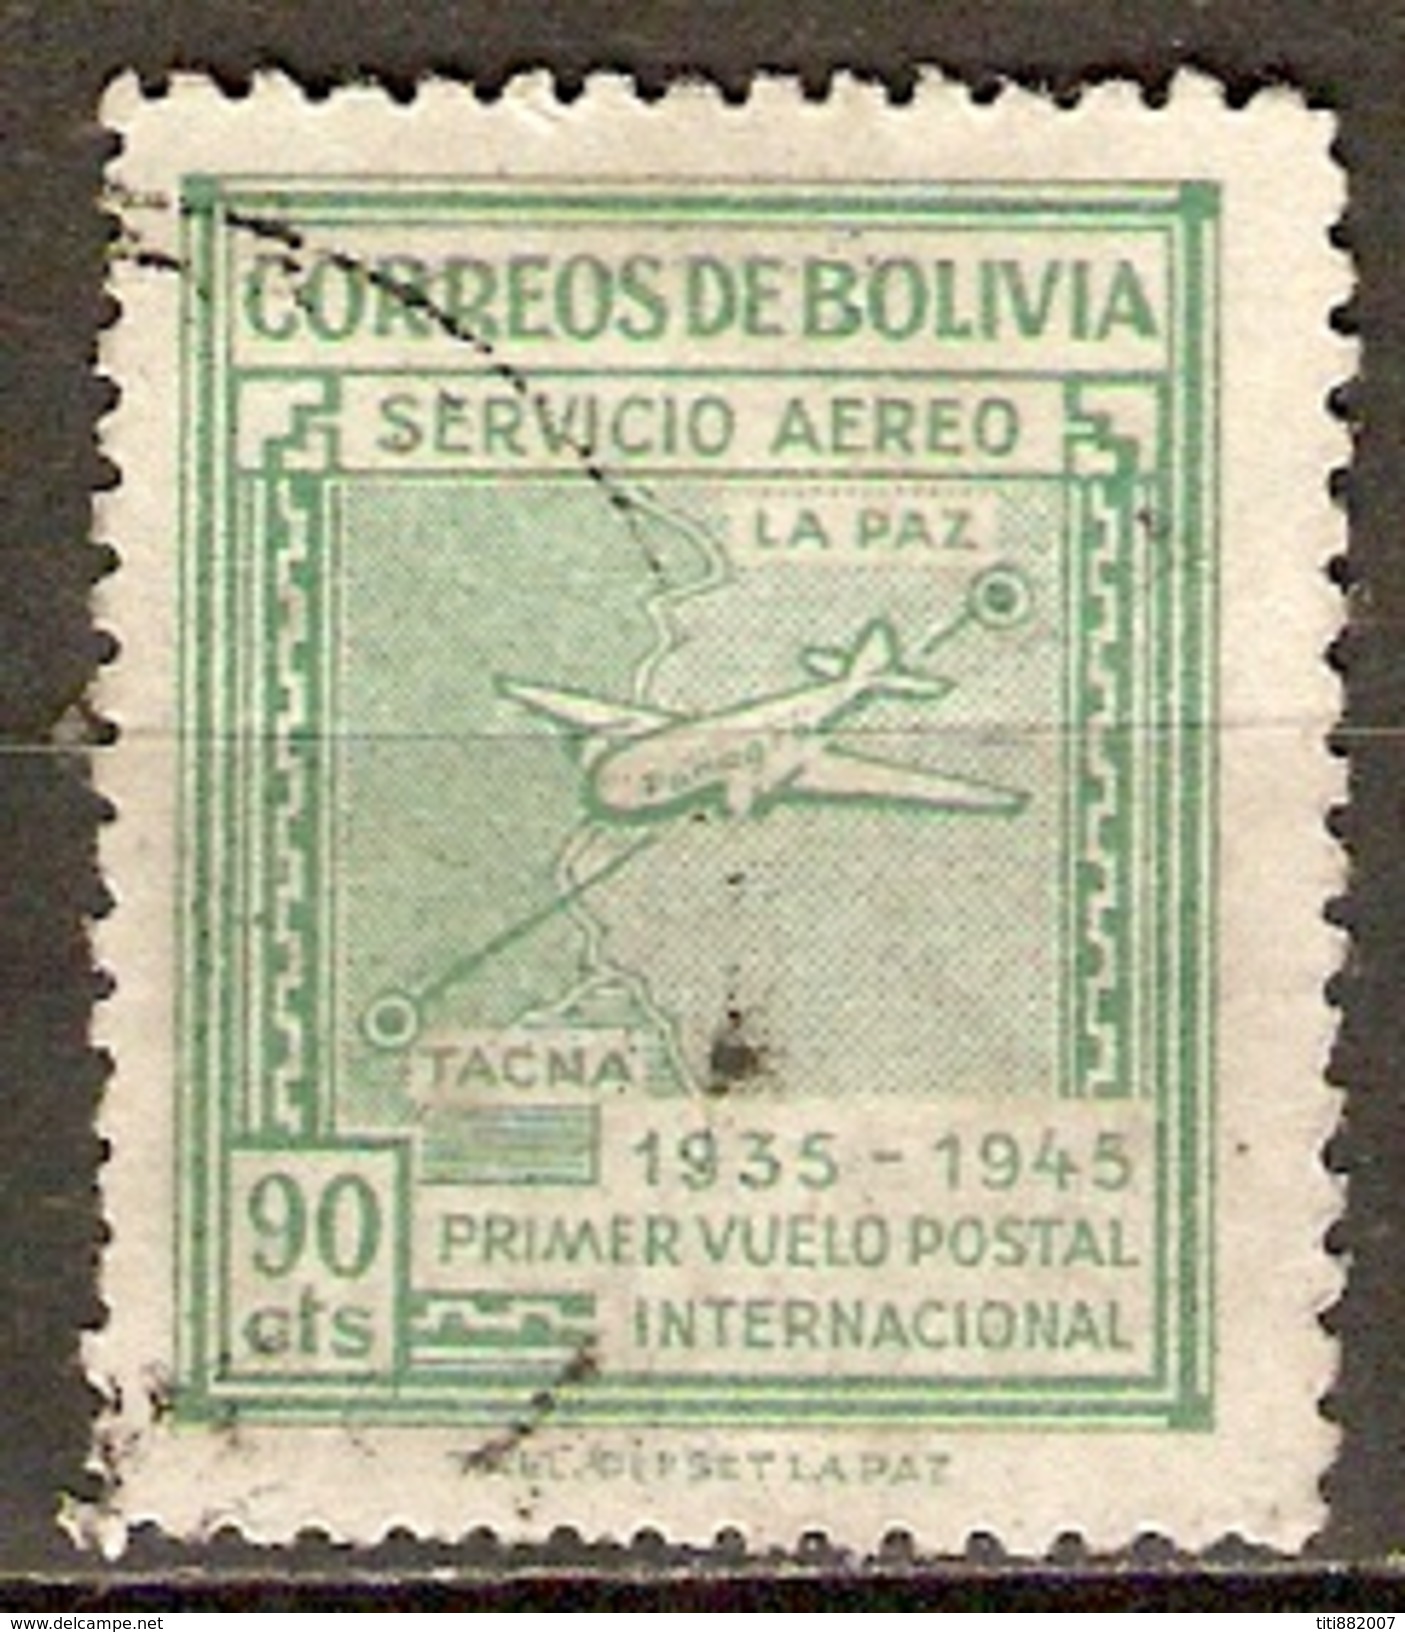 BOLIVIE   -   Aéro  -  1945.  Y&T N° 79 Oblitéré.   Avion  /  1er Vol Postal LA PAZ - TACNA. - Bolivien